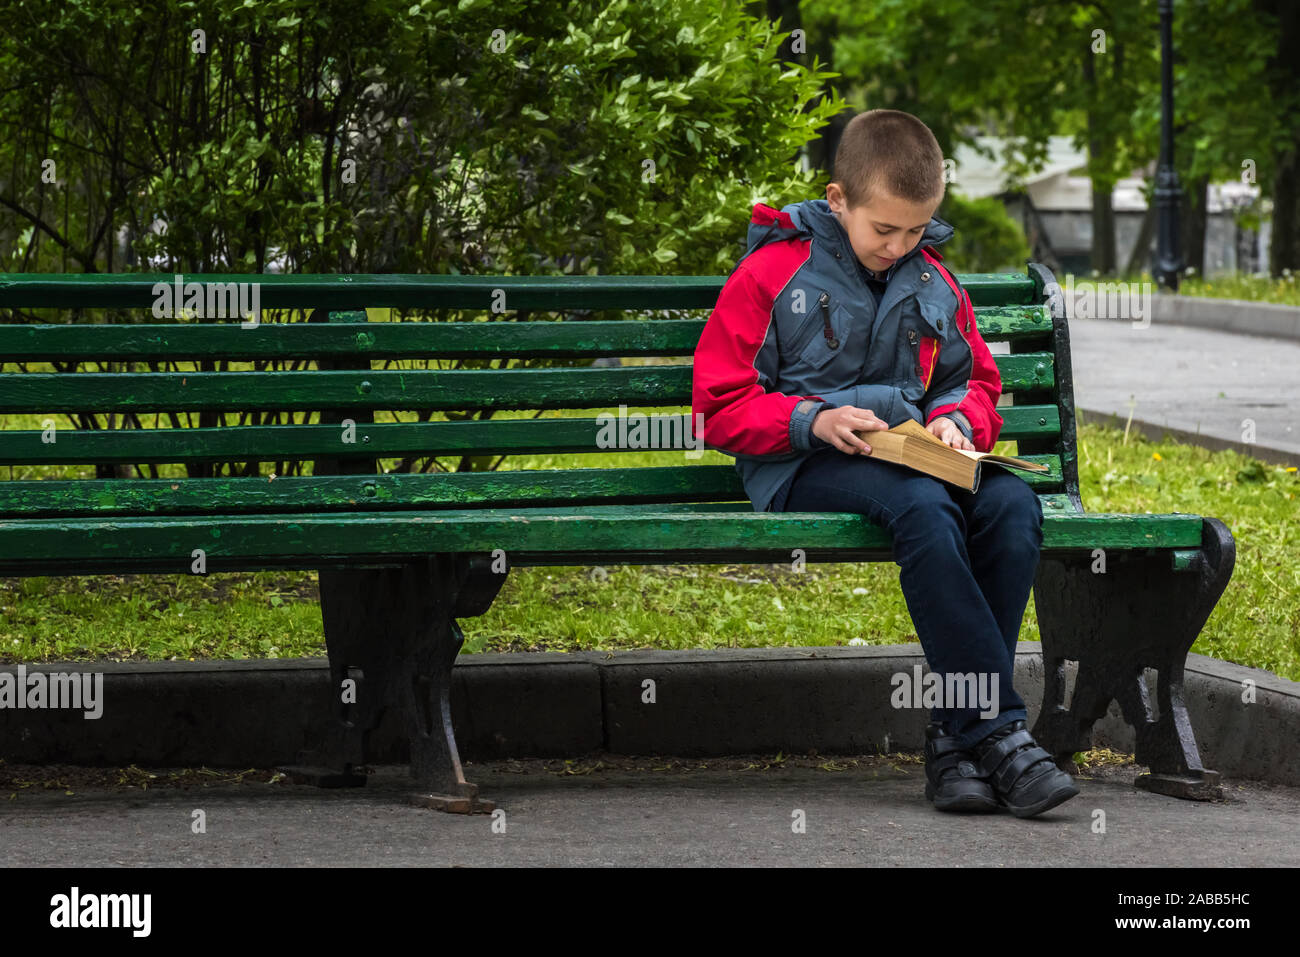 Ernsthafte junge in bequeme Kleidung ist ein Buch zu lesen. Junge ist allein sitzen, die auf Grün lackiert Holzbank im Park. Selektive konzentrieren. Unfocused grün Par Stockfoto